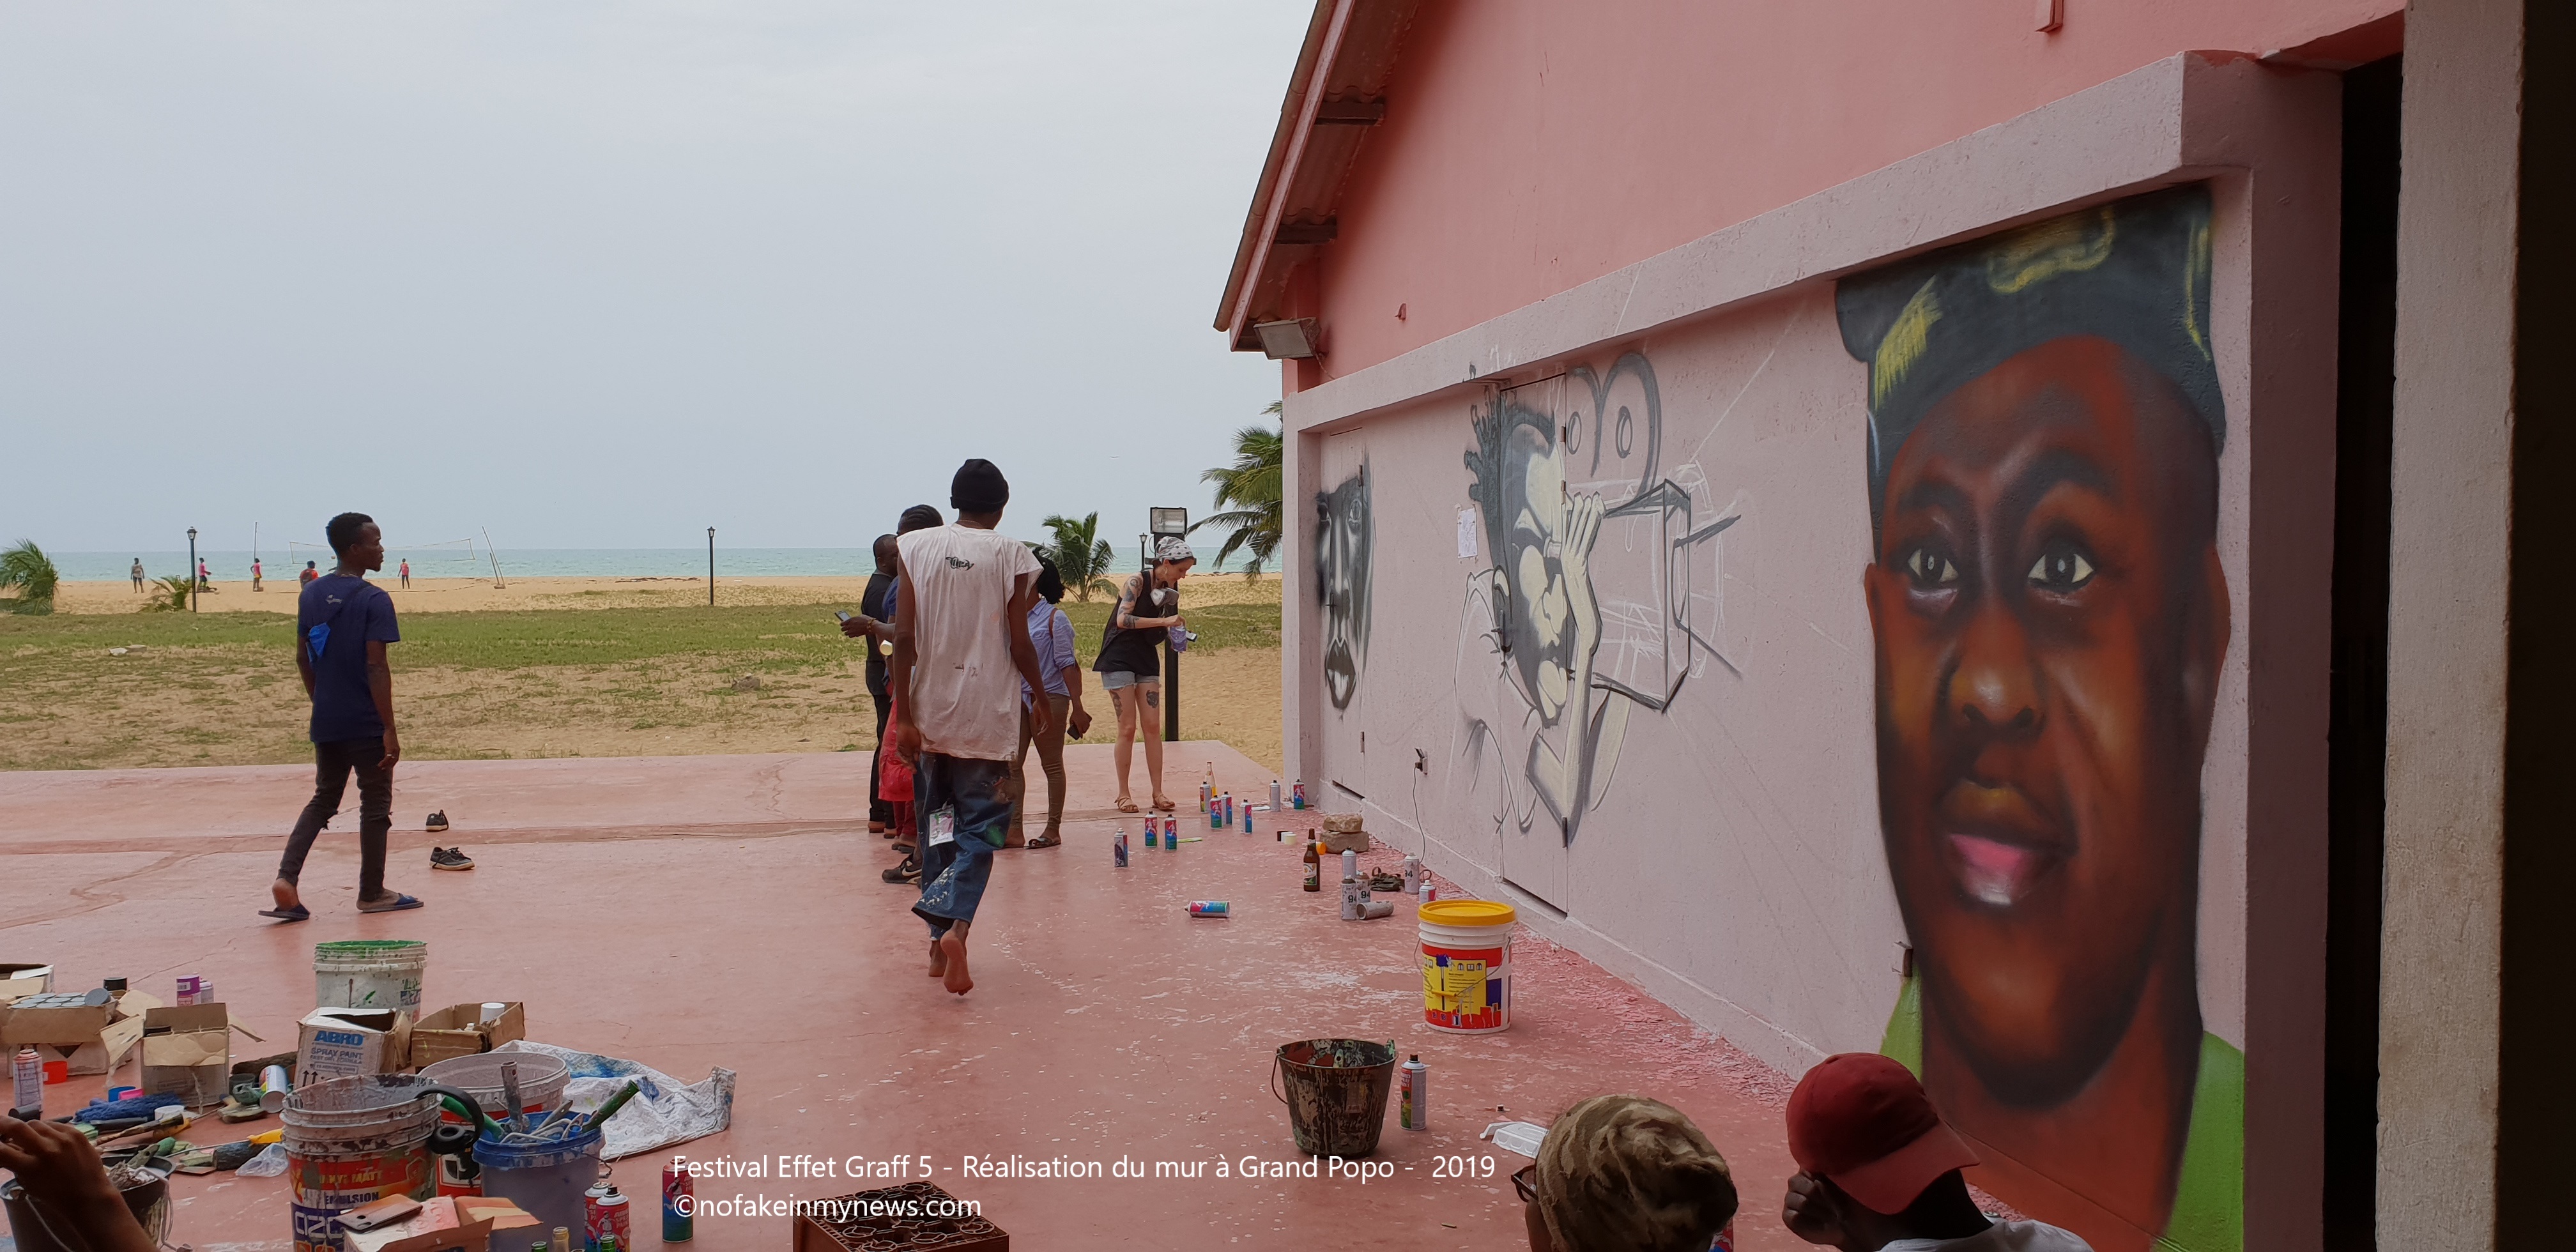 Festival Effet Graff 5 - Réalisation du mur à Grand Popo - 2019 - ©nofakeinmynews